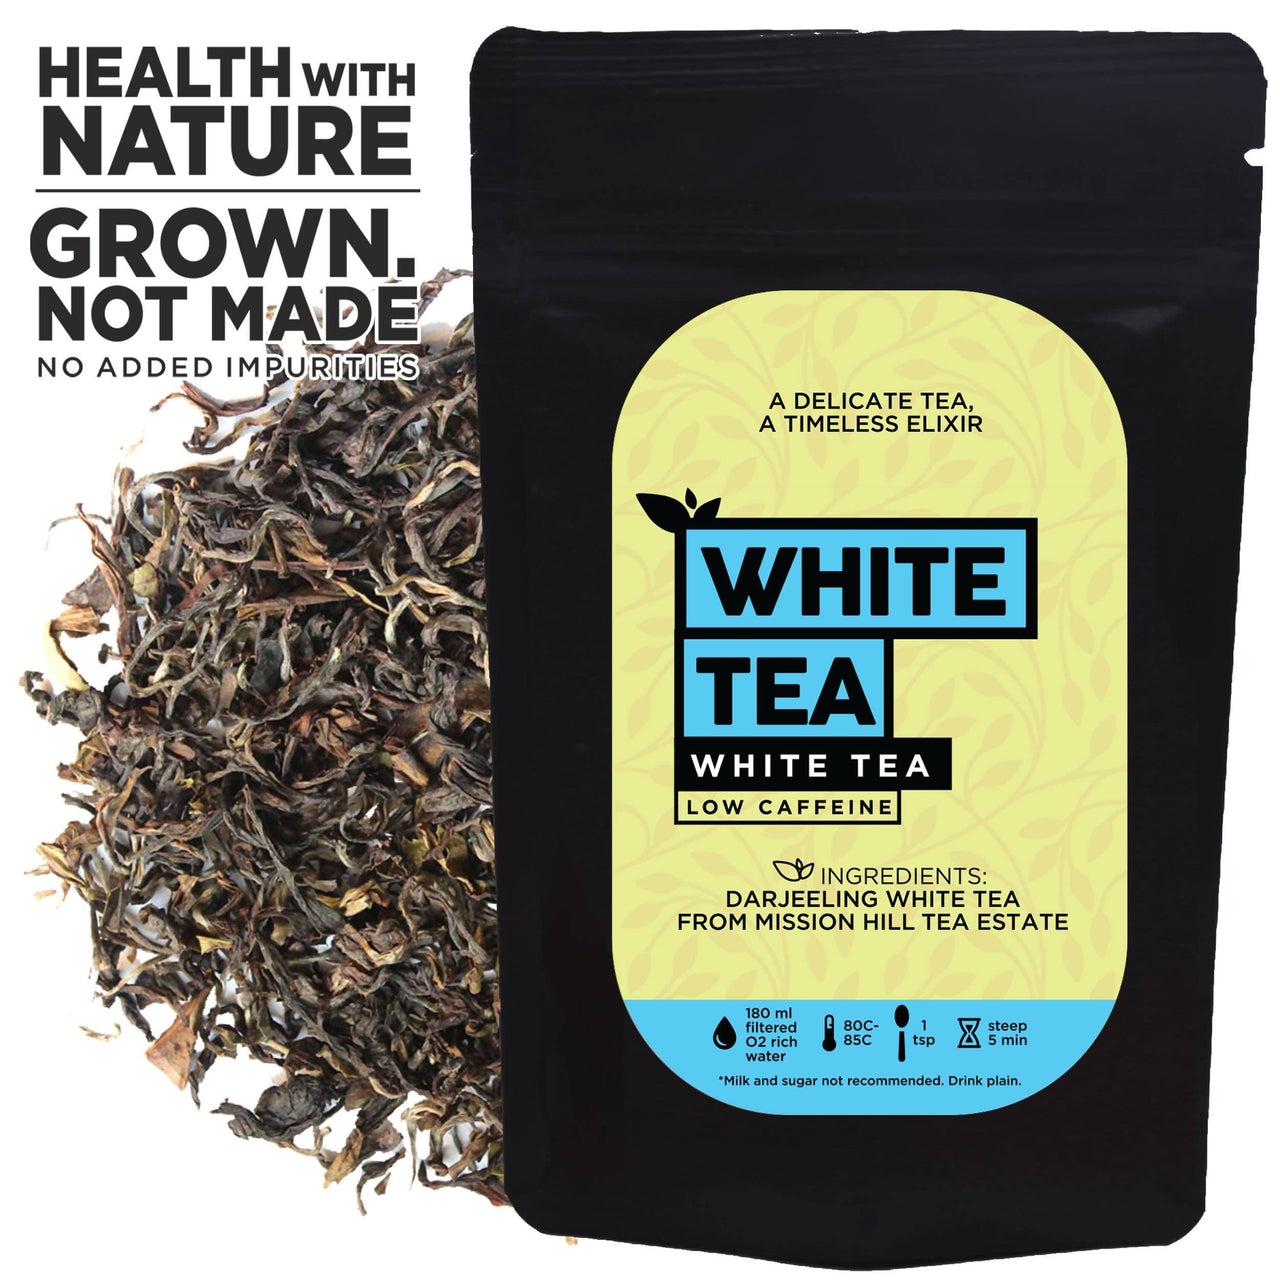 The Tea Trove - Darjeeling White Tea